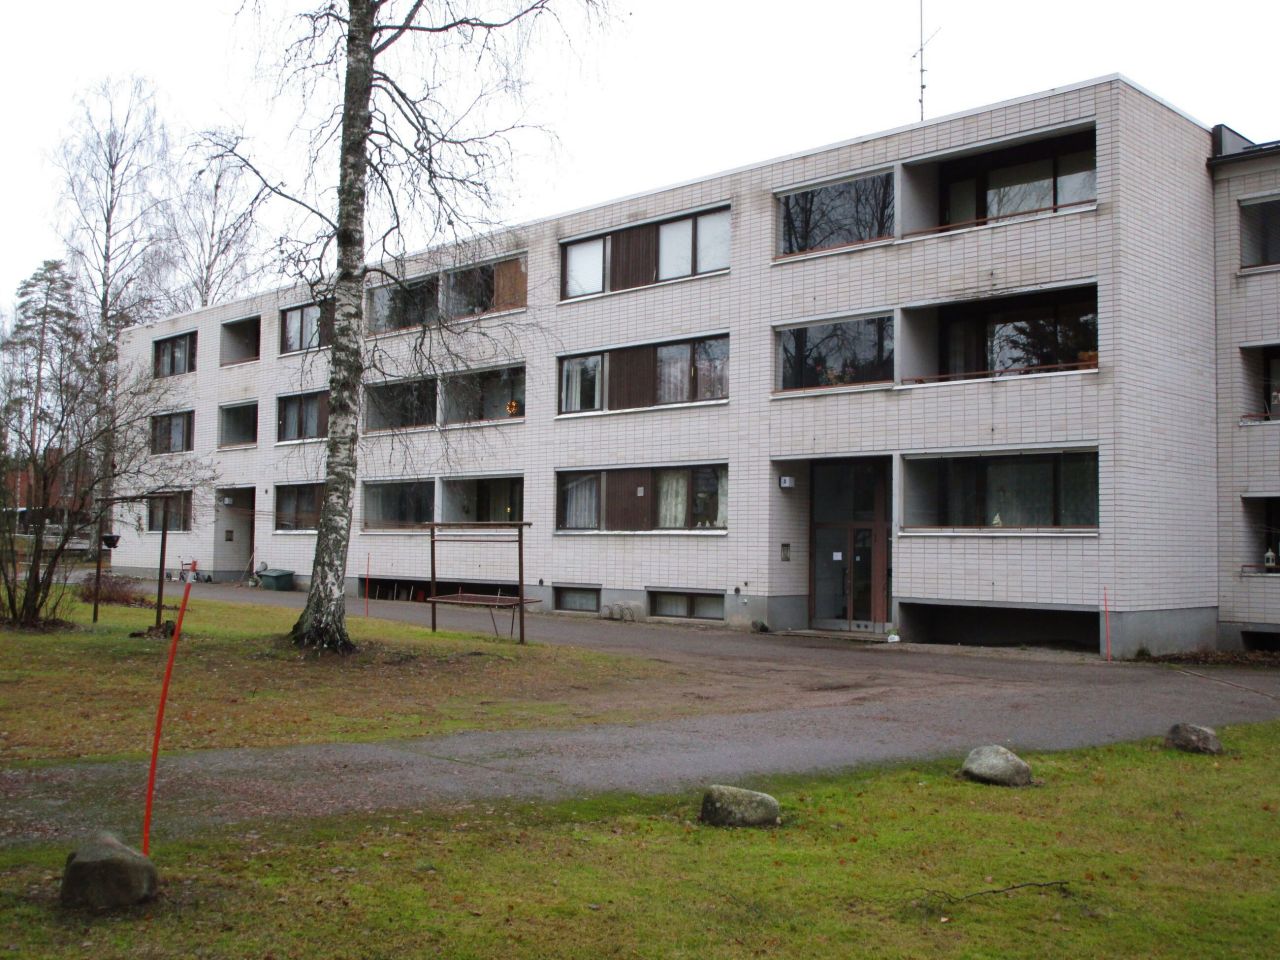 Flat in Luumaki, Finland, 44.5 sq.m - picture 1